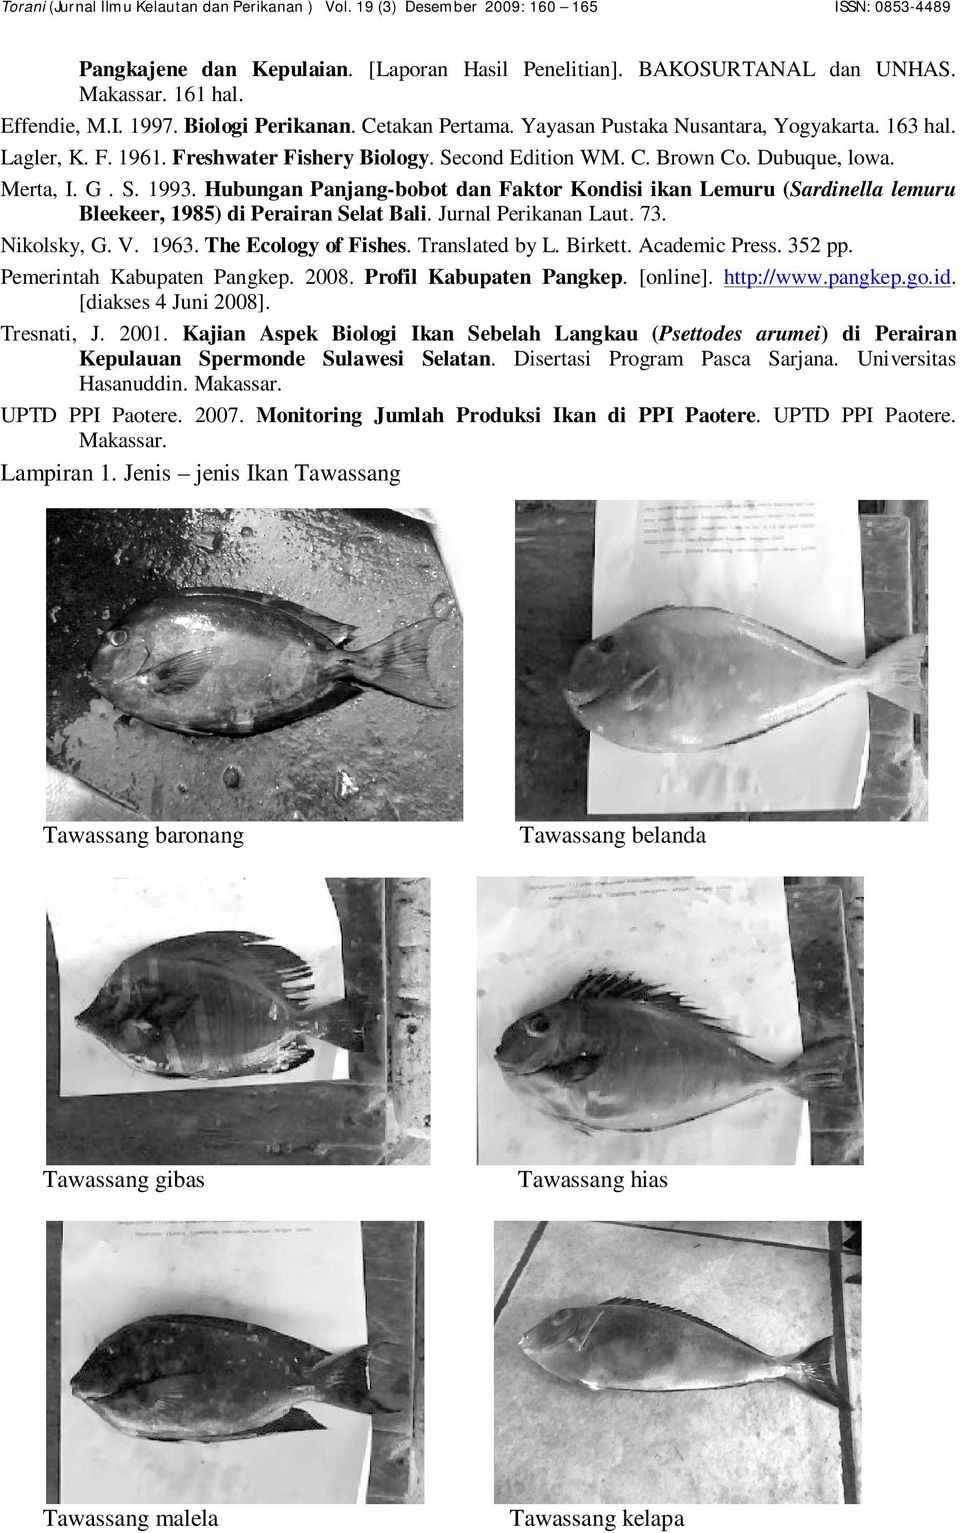 Hubungan Panjang-bobot dan Faktor Kondisi ikan Lemuru (Sardinella lemuru Bleekeer, 1985) di Perairan Selat Bali. Jurnal Perikanan Laut. 73. Nikolsky, G. V. 1963. The Ecology of Fishes.